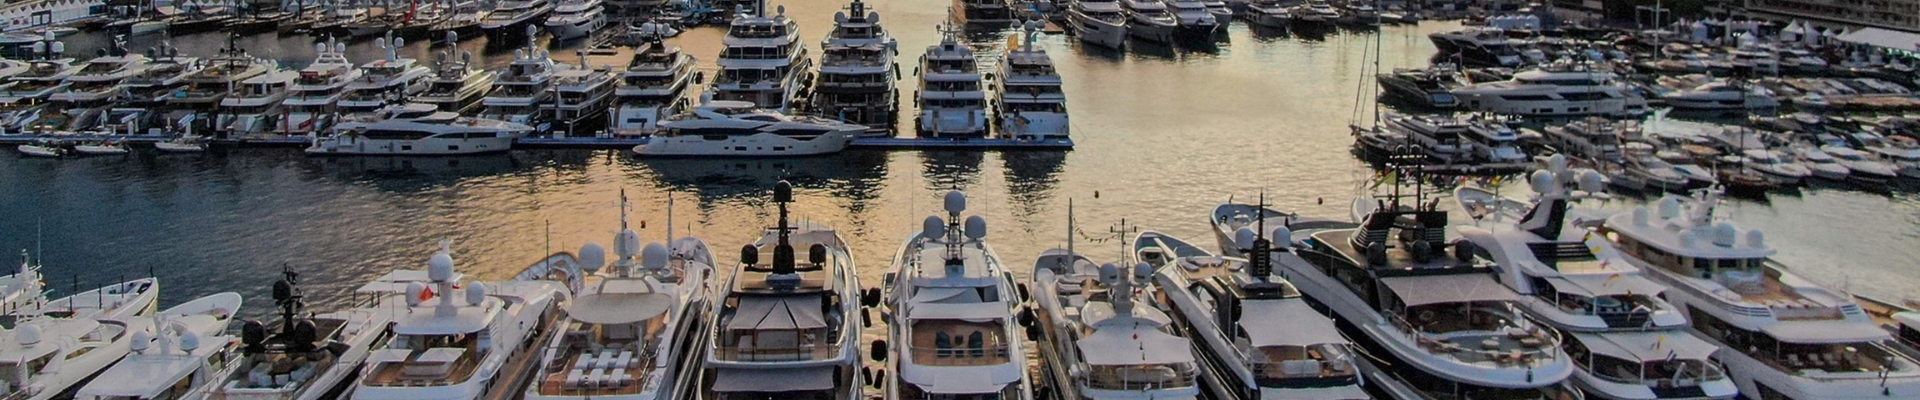 Monaco Yacht Show 2023